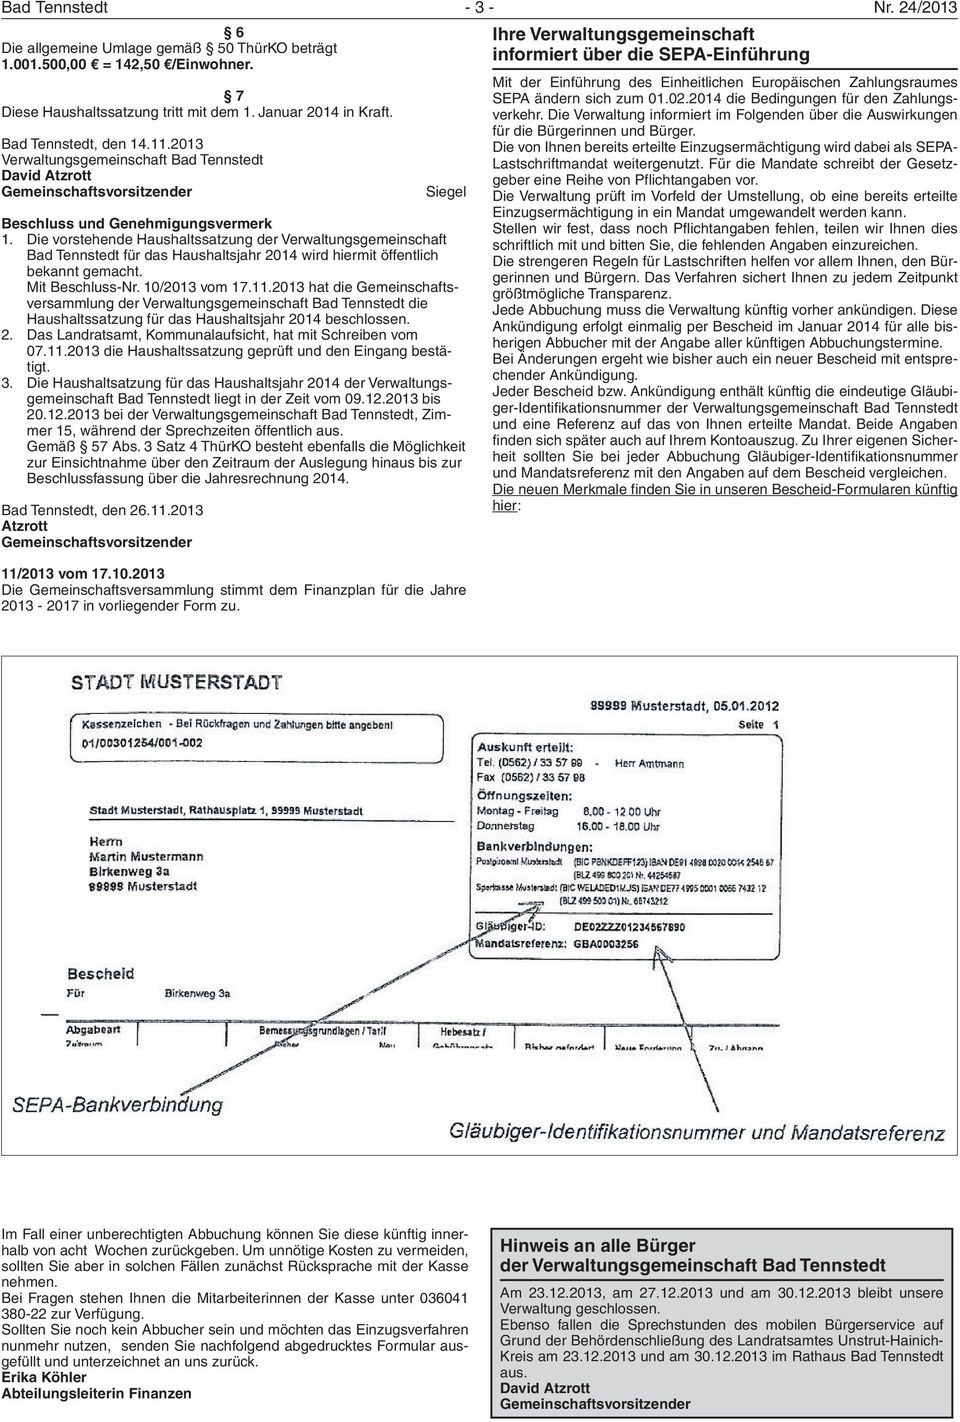 Die vorstehende Haushaltssatzung der Verwaltungsgemeinschaft Bad Tennstedt für das Haushaltsjahr 2014 wird hiermit öffentlich bekannt gemacht. Mit Beschluss-Nr. 10/2013 vom 17.11.